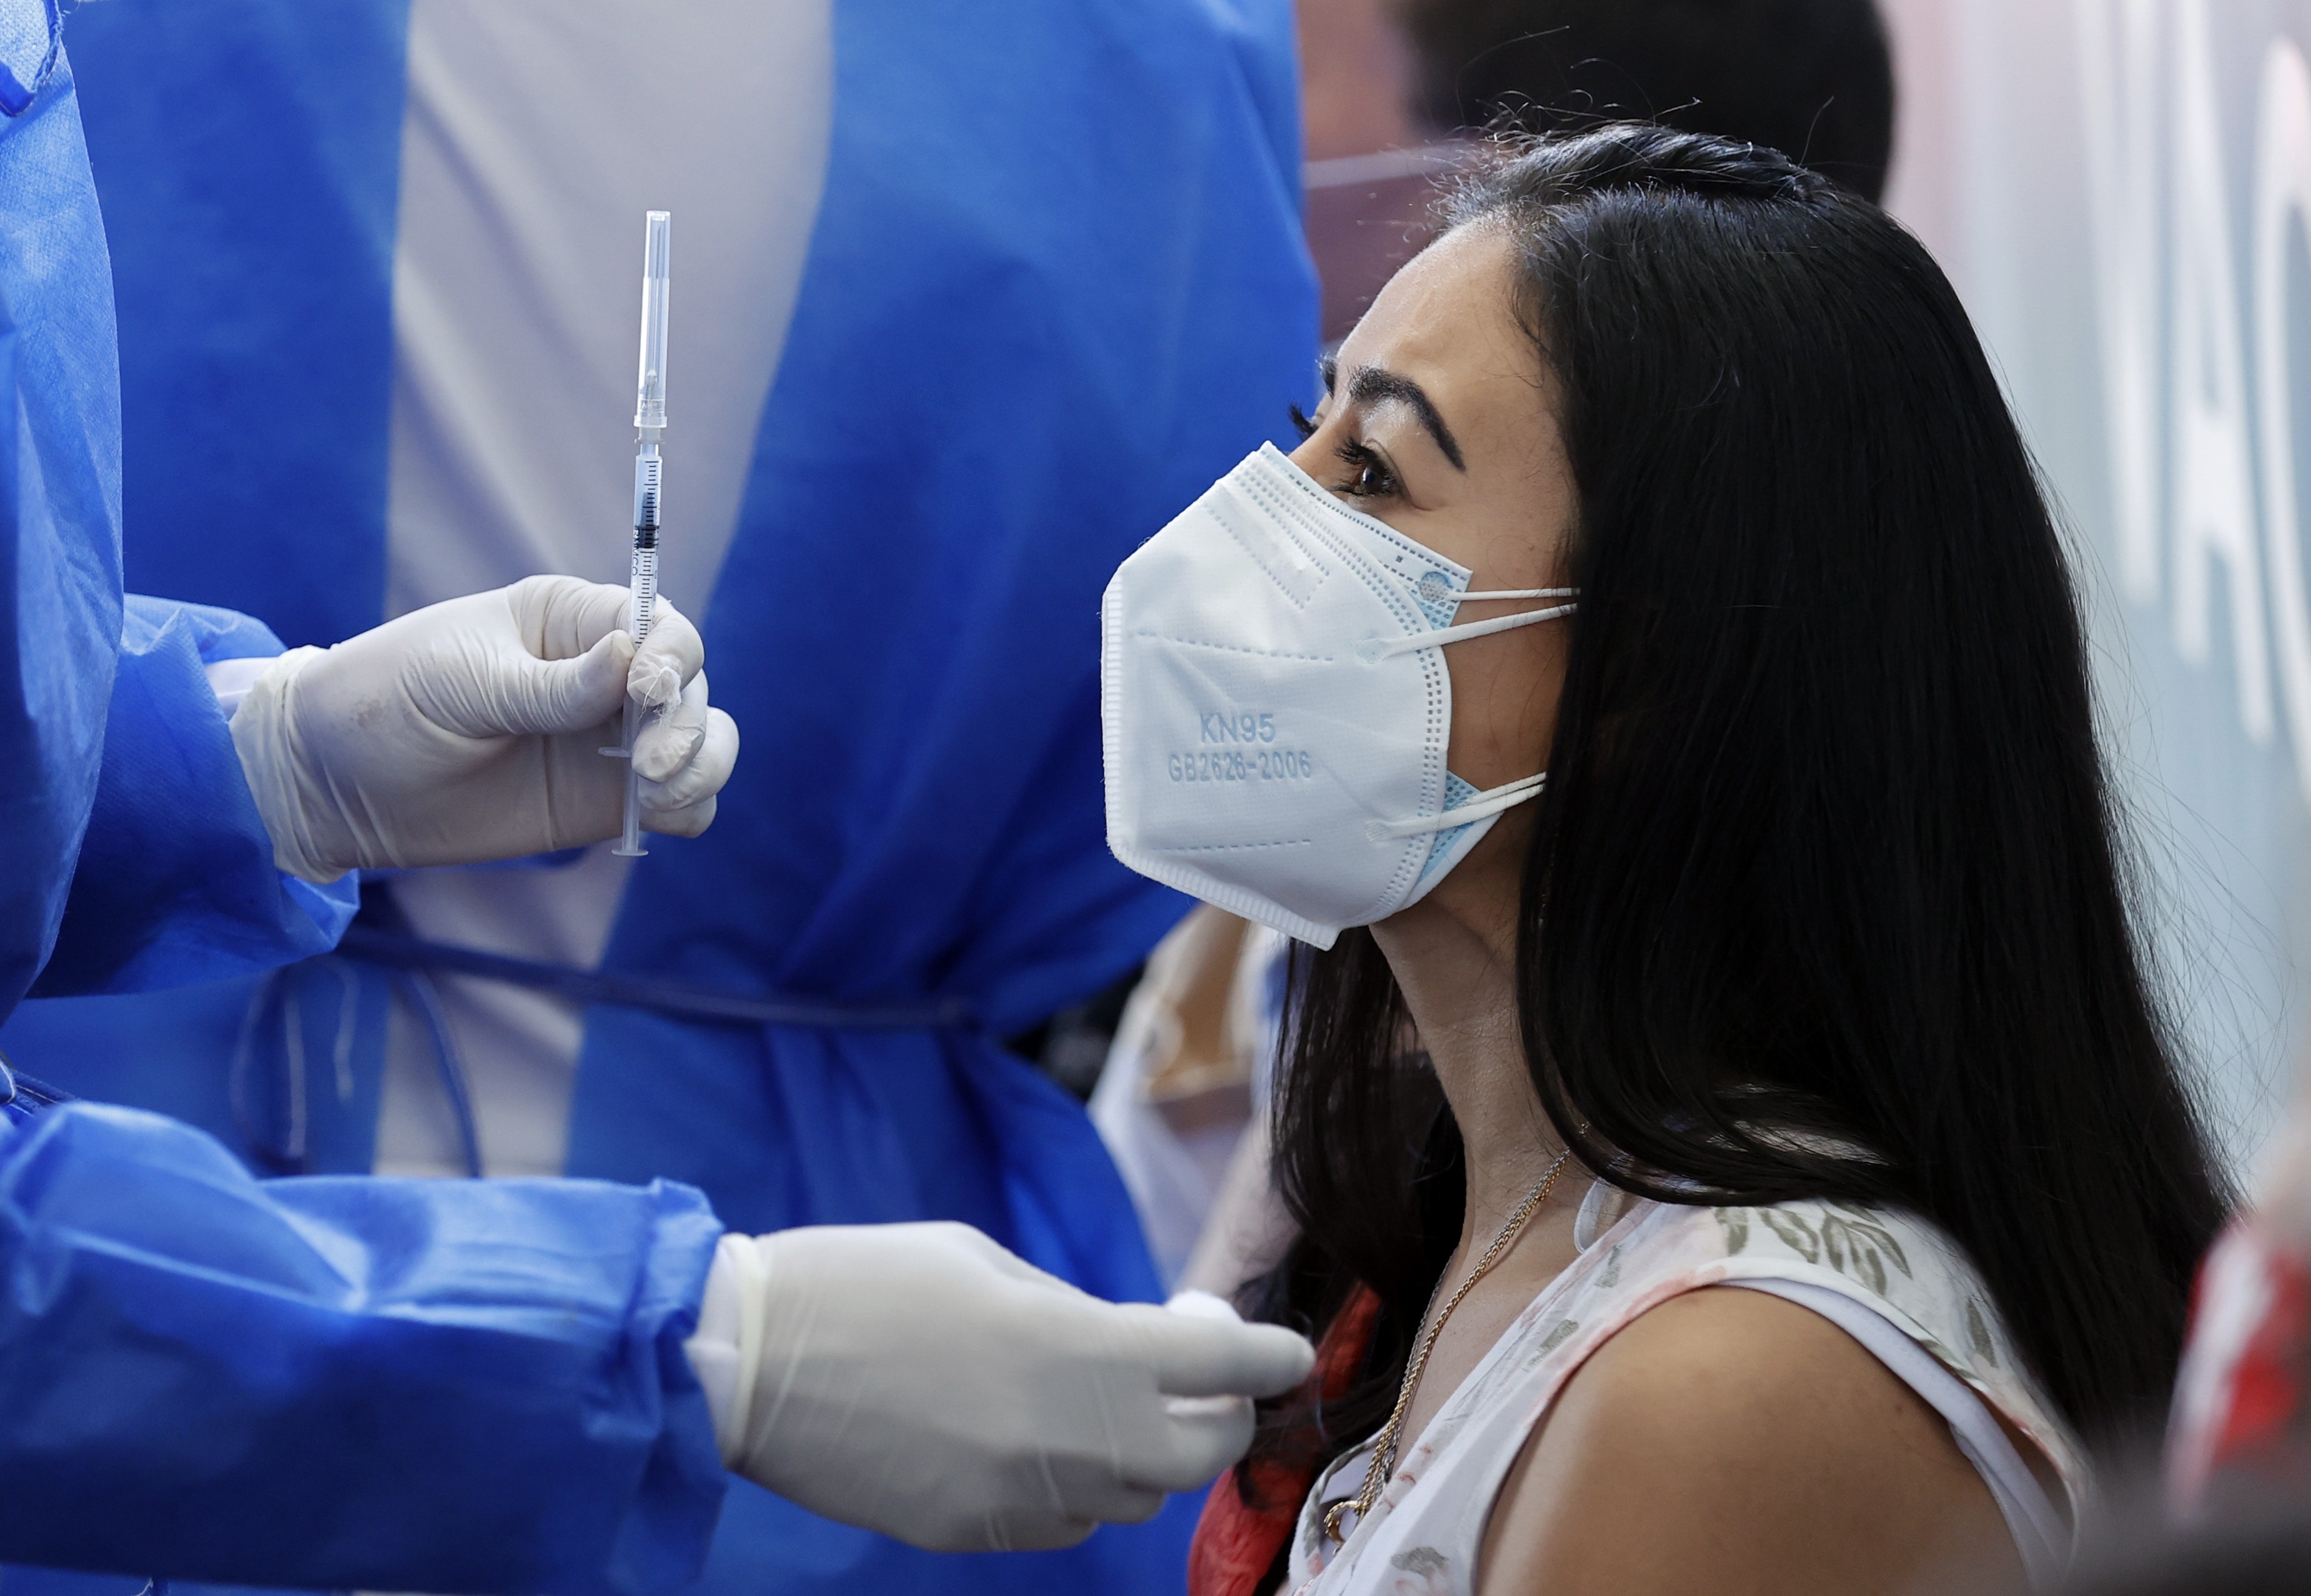 Los contagios en Colombia siguen bajando: este 14 de julio se registraron 17.230 casos nuevos de covid-19 